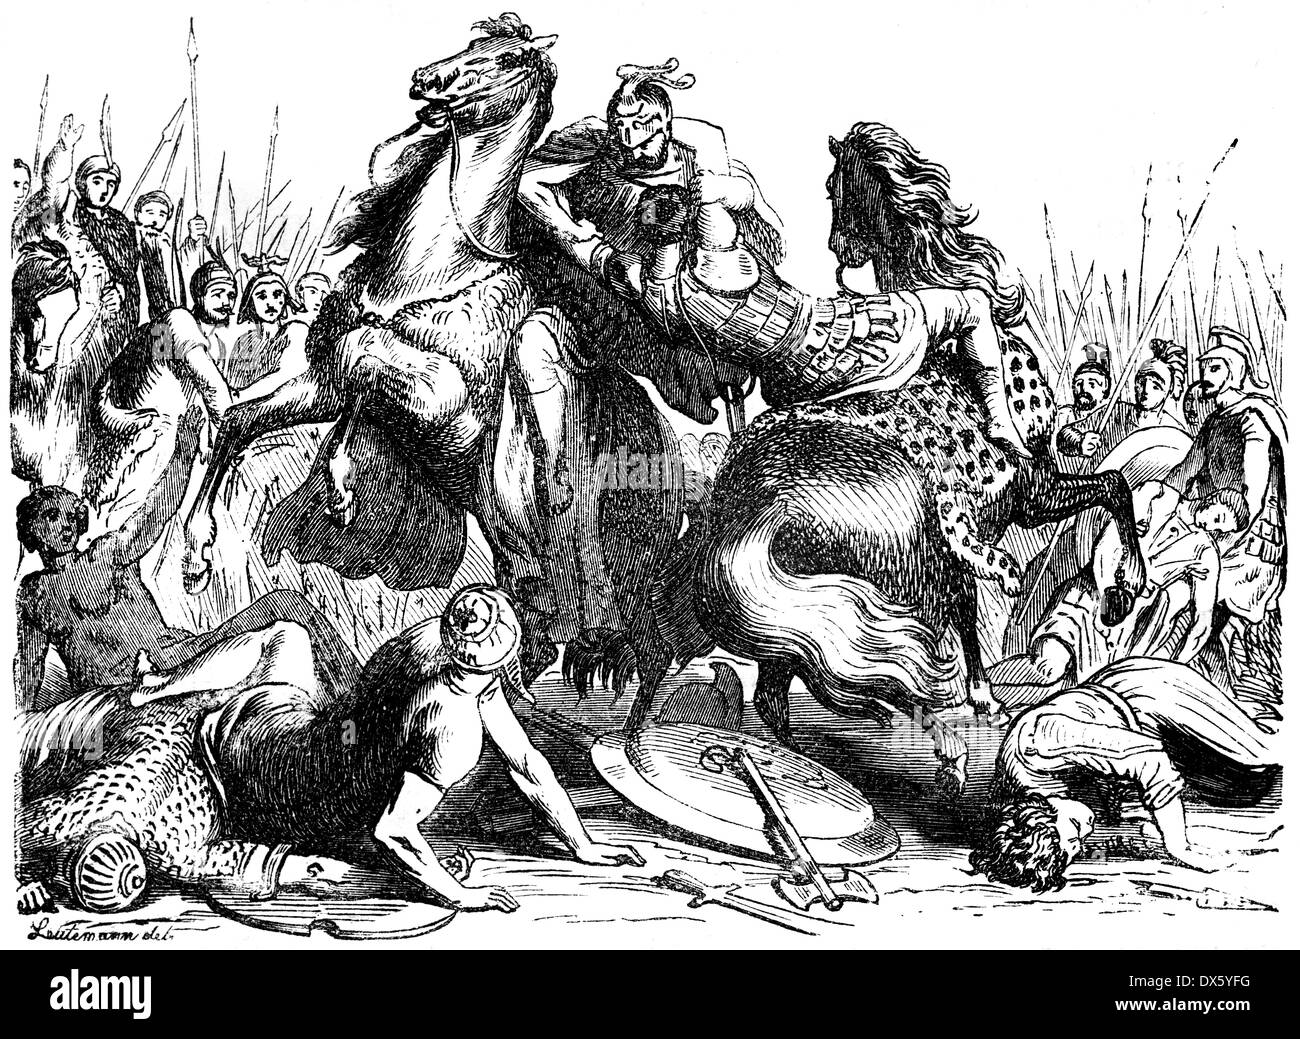 La lotta di Eumenes e neottolemo, illustrazione dal libro datato 1878 Foto Stock